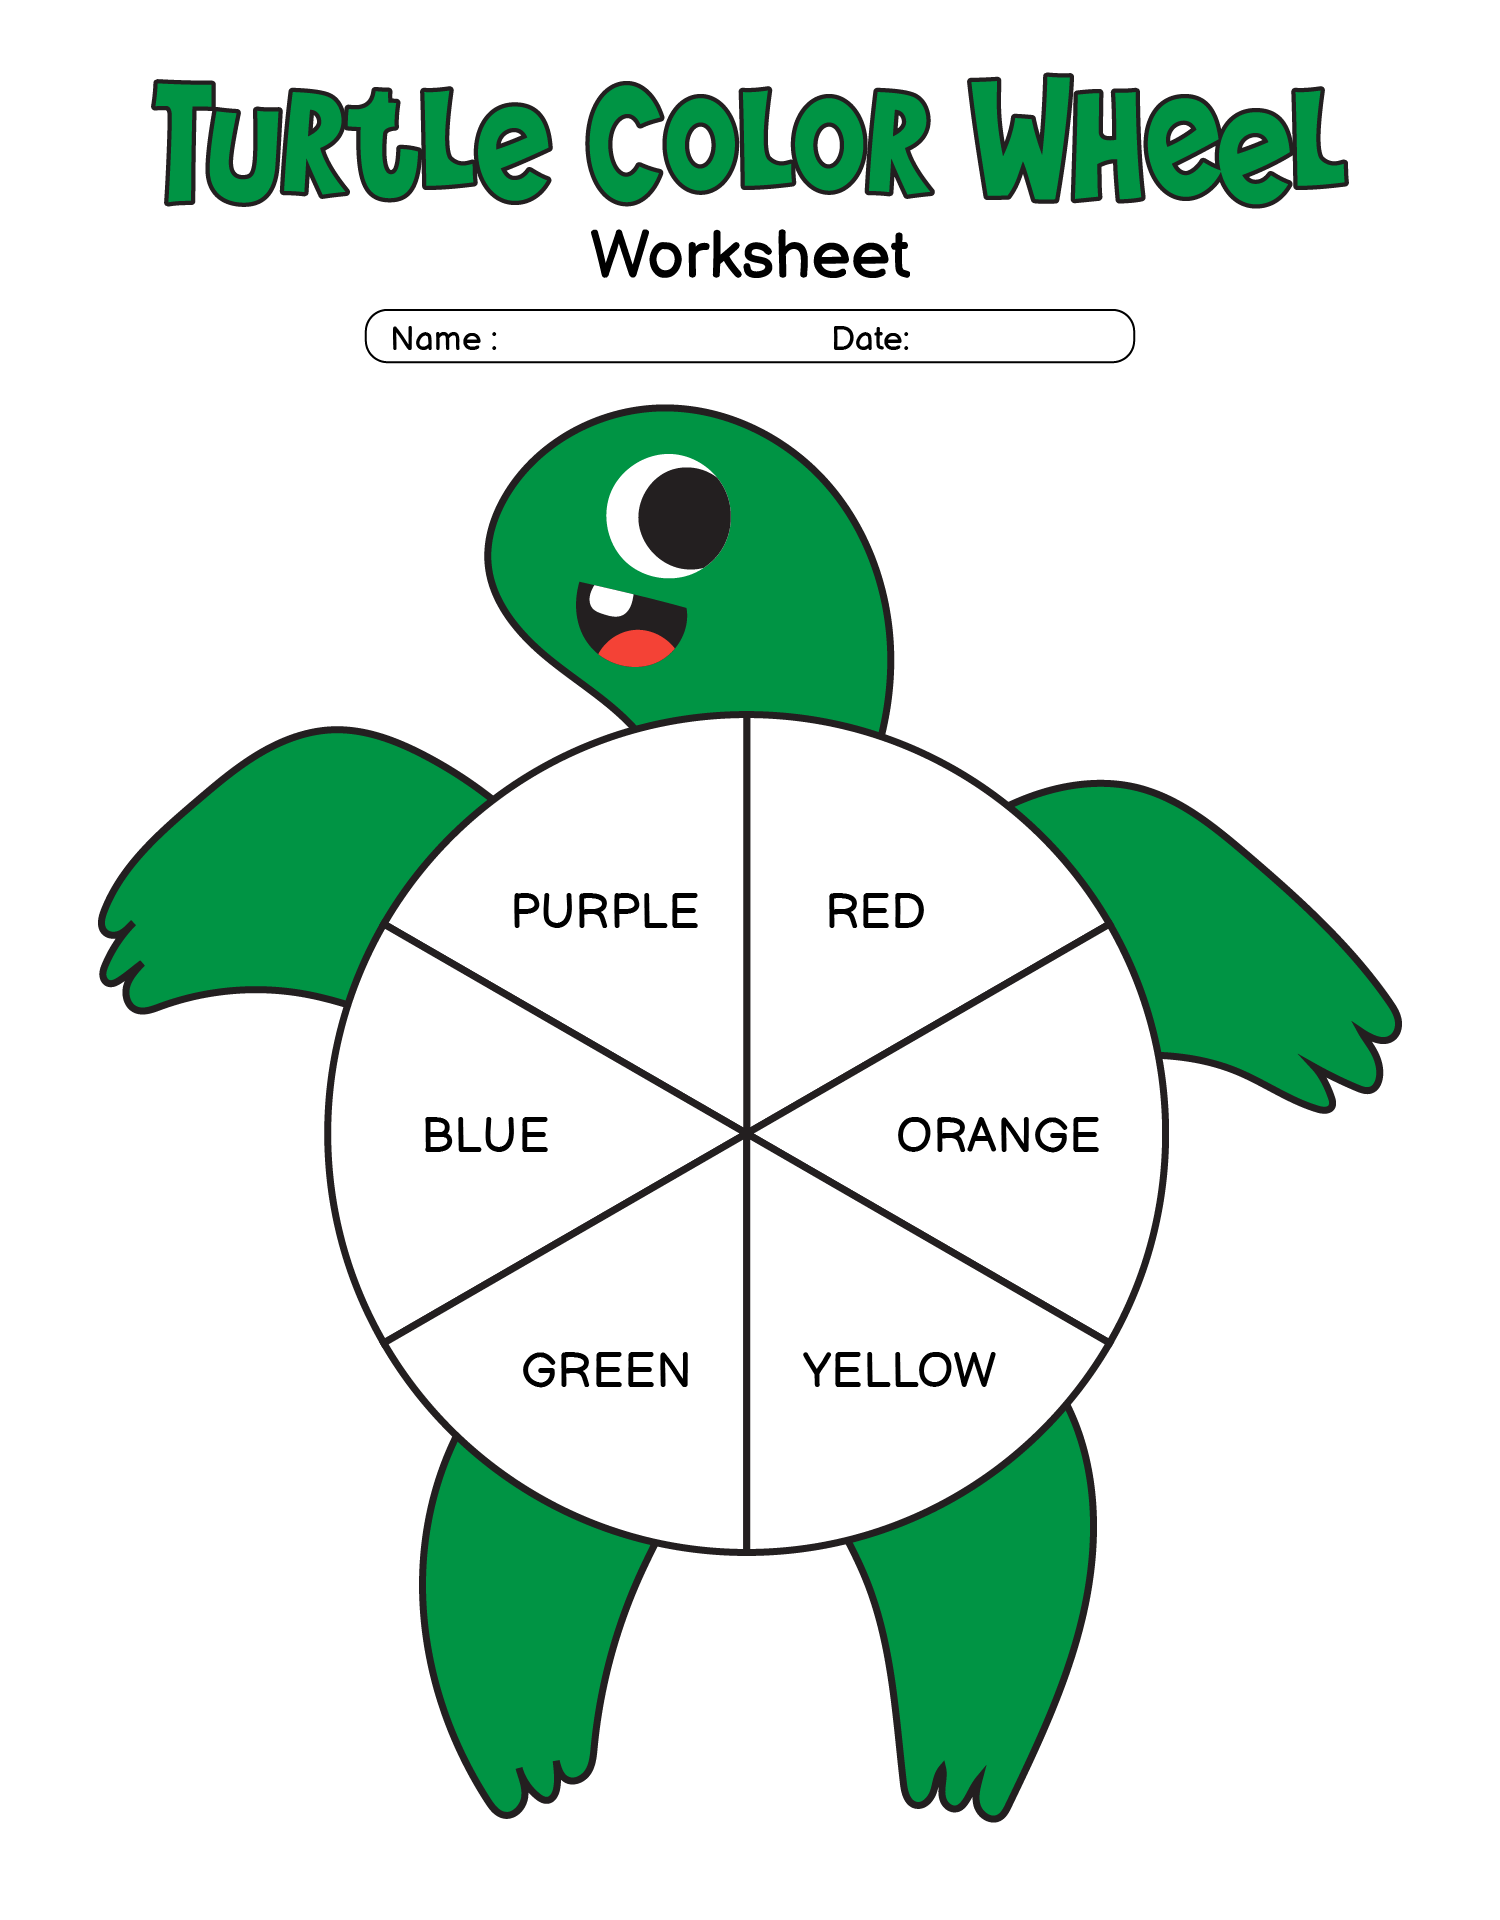 Turtle Color Wheel Worksheet